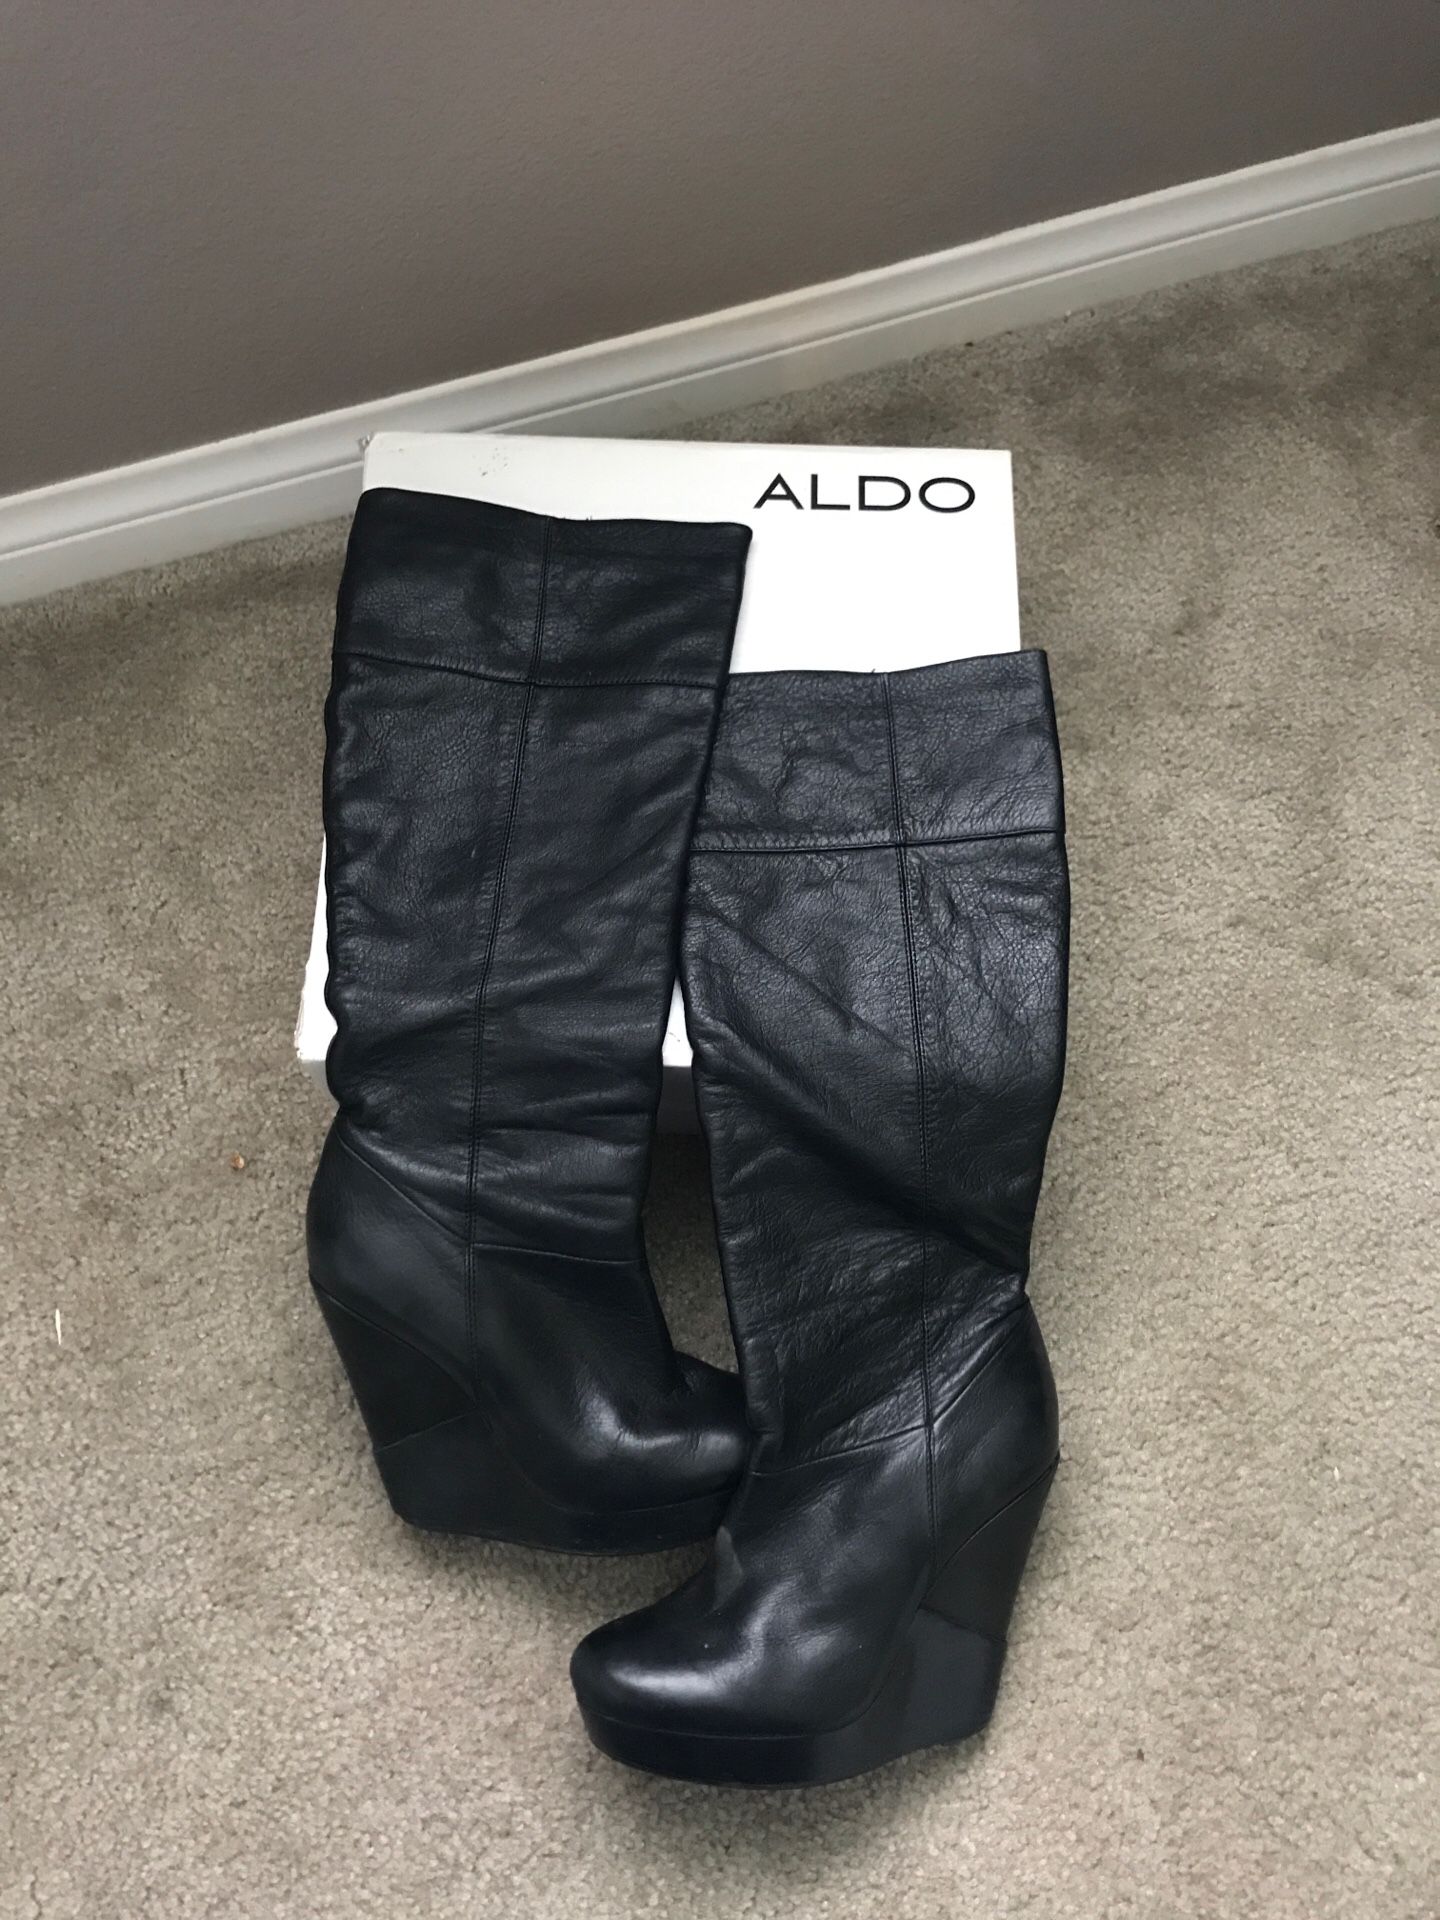 Nogle gange nogle gange Hej hej mundstykke Aldo black wedge boots size 37 for Sale in Colton, CA - OfferUp